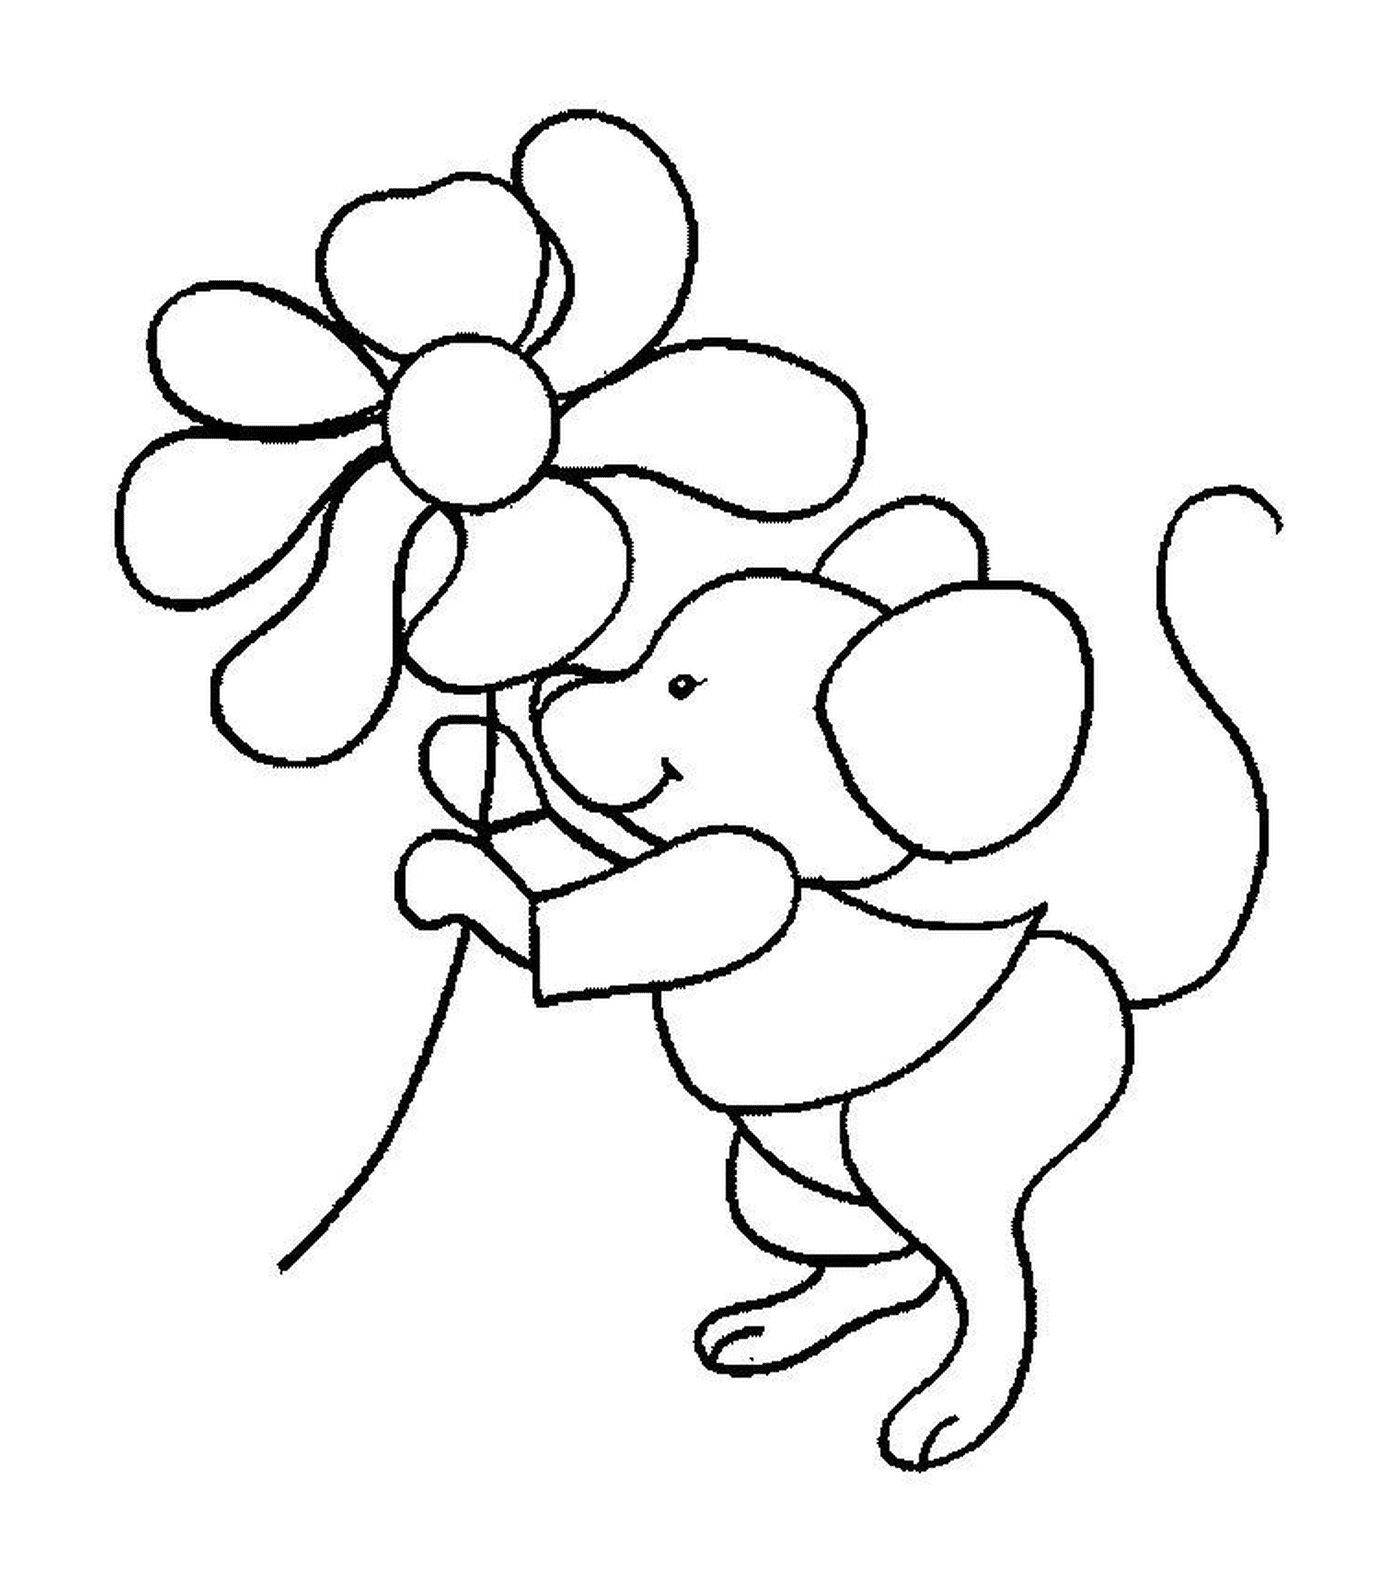  Um rato segurando uma flor 